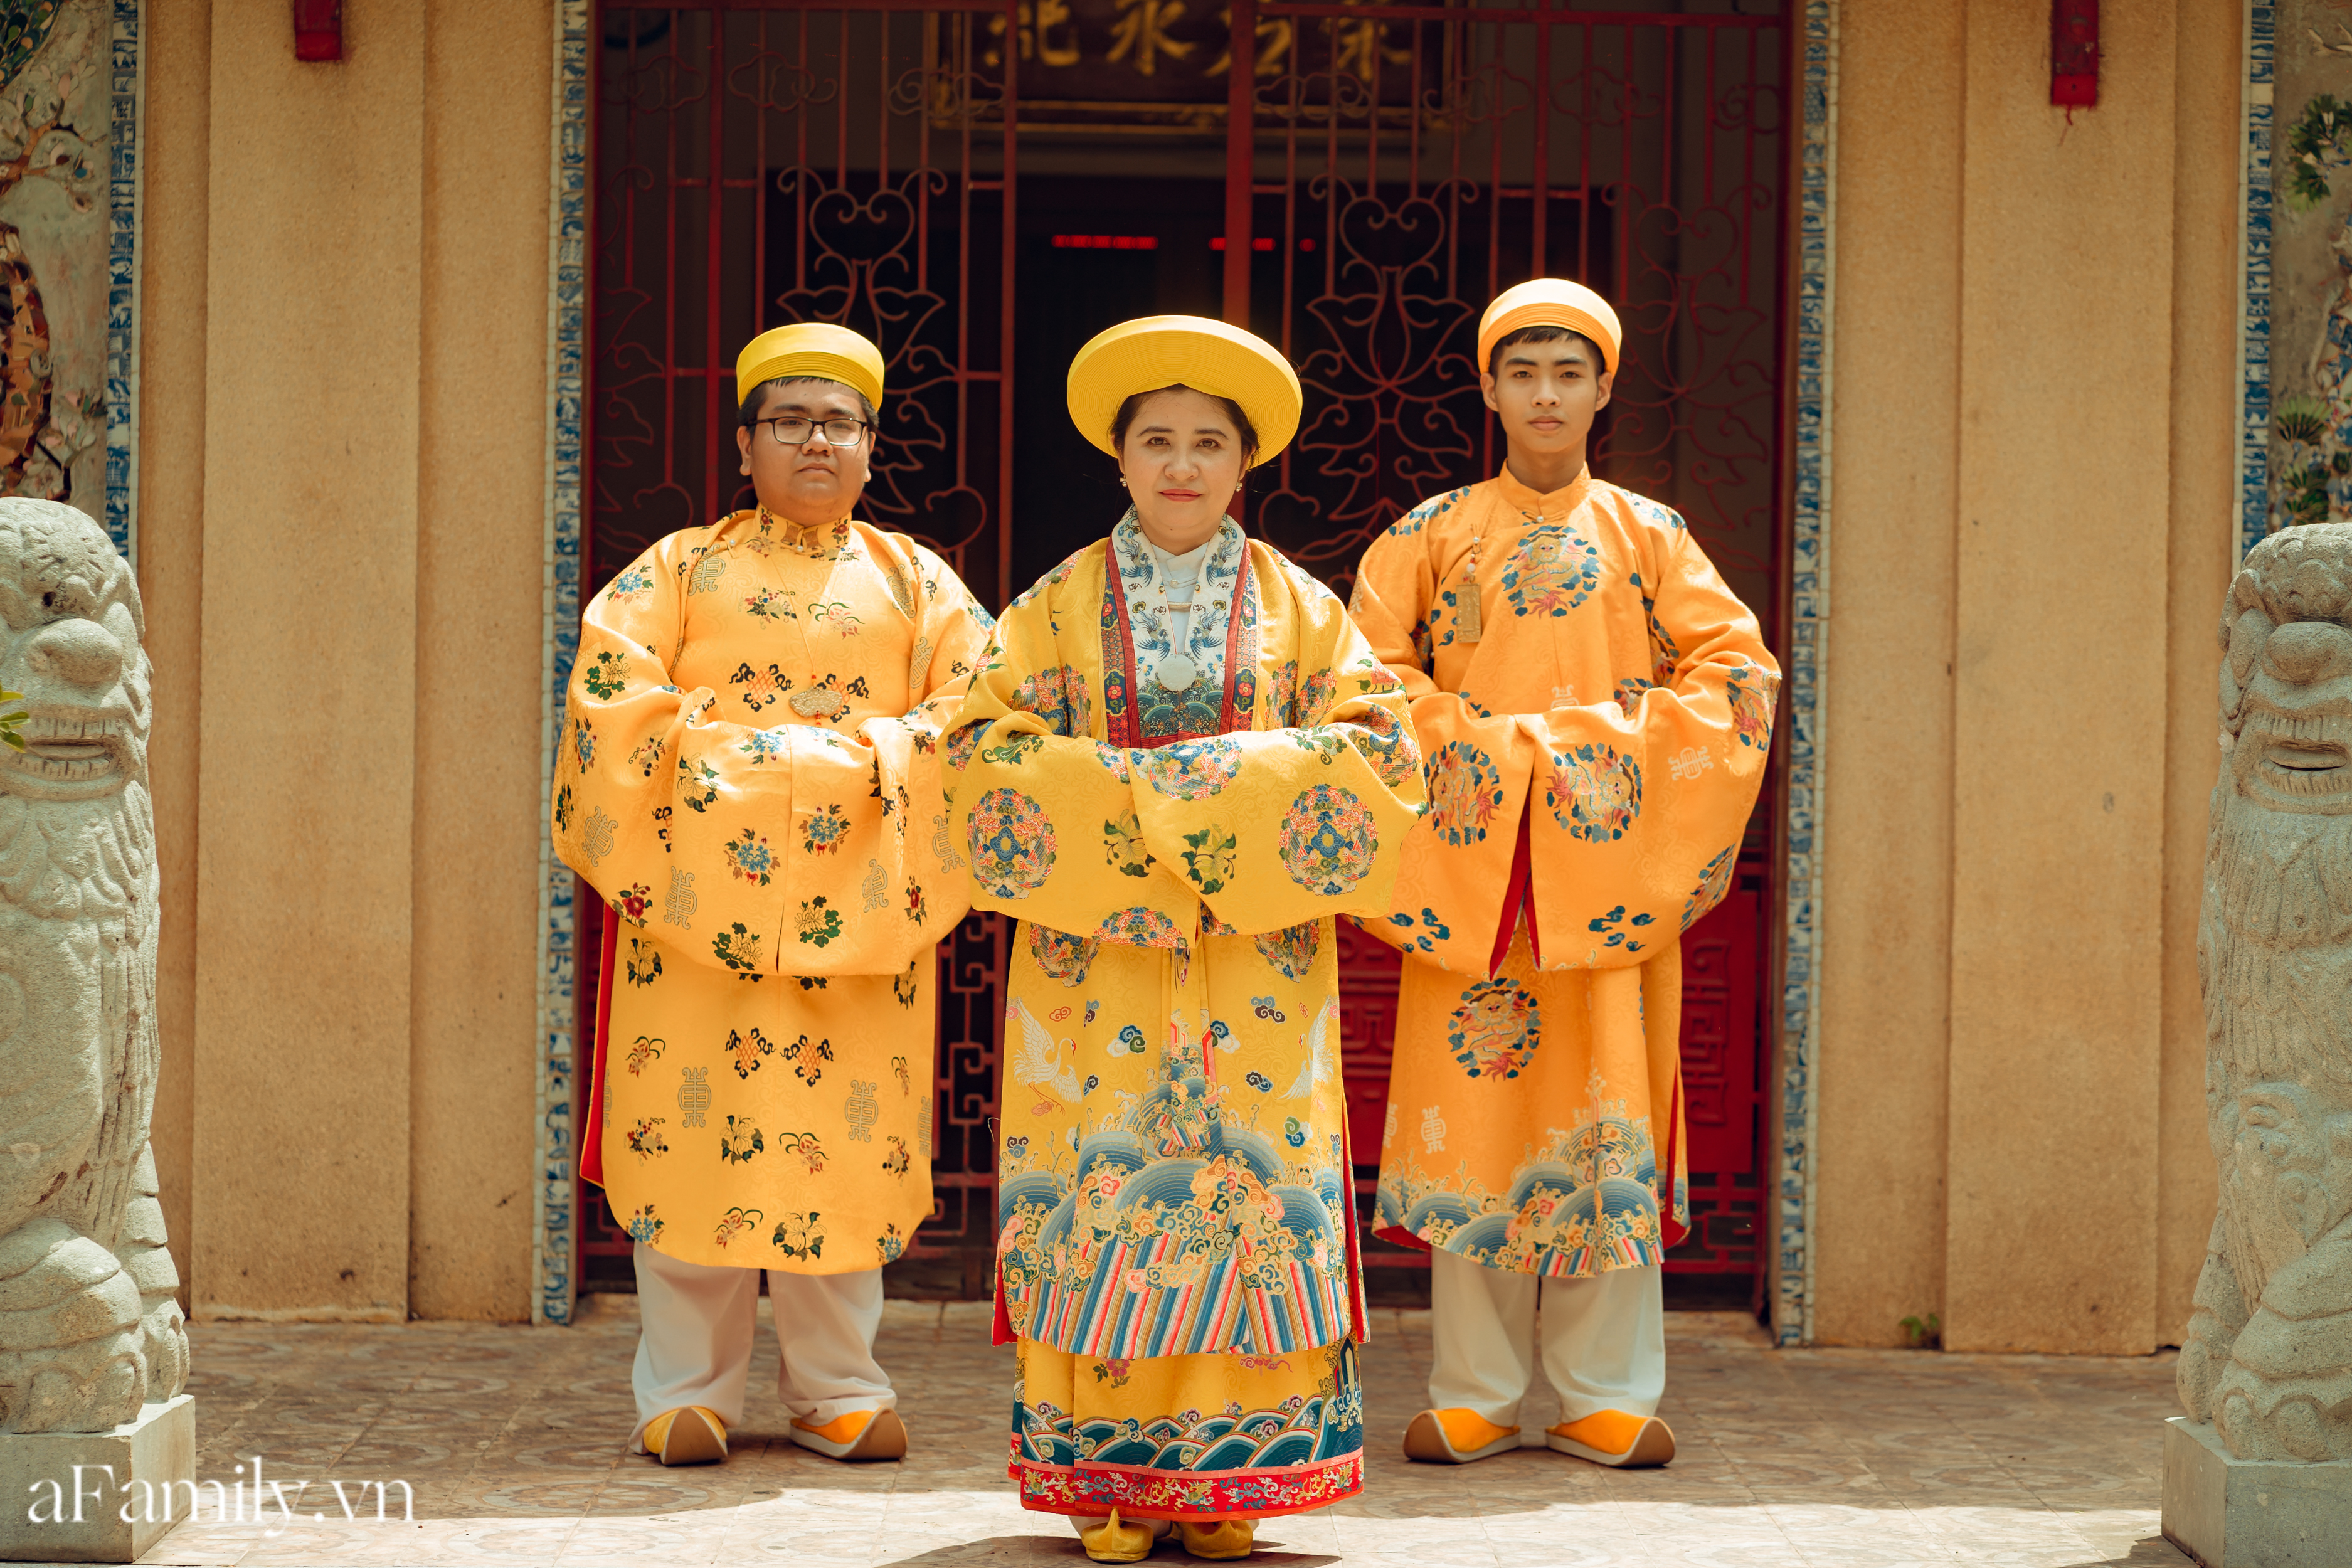 Nhóm học sinh cấp 3 tìm về nét đẹp truyền thống, diện nguyên dàn cổ phục Việt chụp ảnh kỷ yếu, nhanh chóng thành tạo &quot;hot trend&quot; trên mạng xã hội - Ảnh 8.